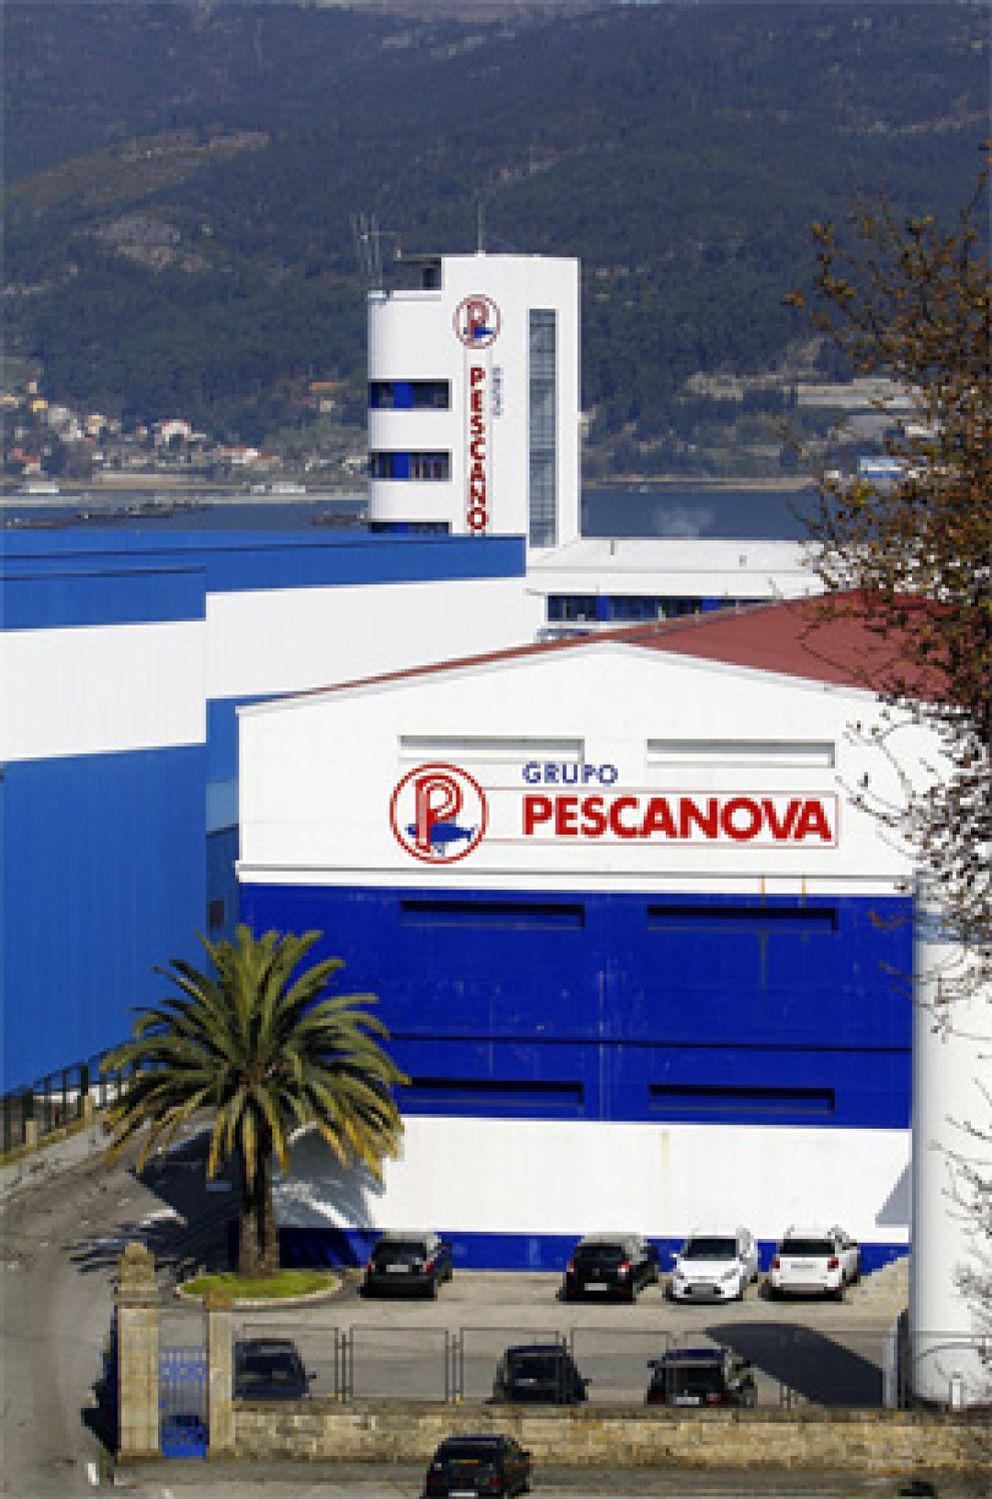 Foto: Pescanova oculta más de 500 millones de deuda en operaciones cruzadas con filiales